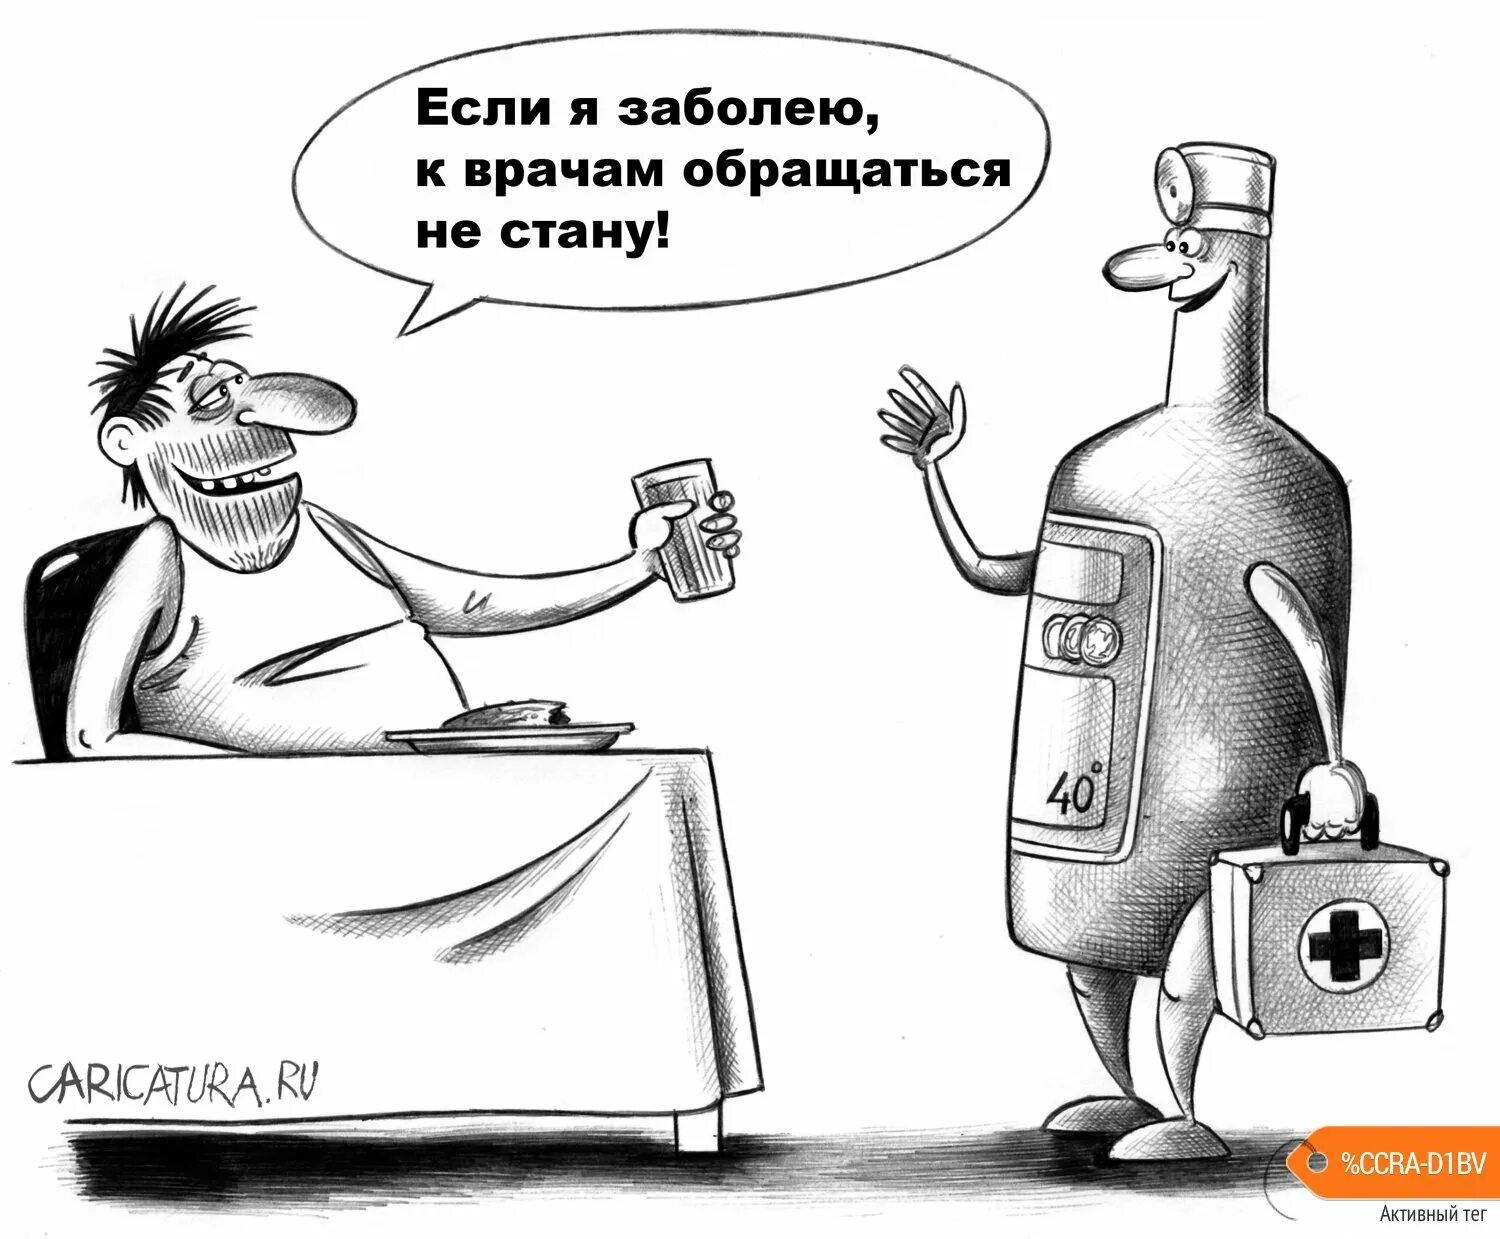 Если я заболею к врачам слушать. Карикатура ру. Алкоголик карикатура.